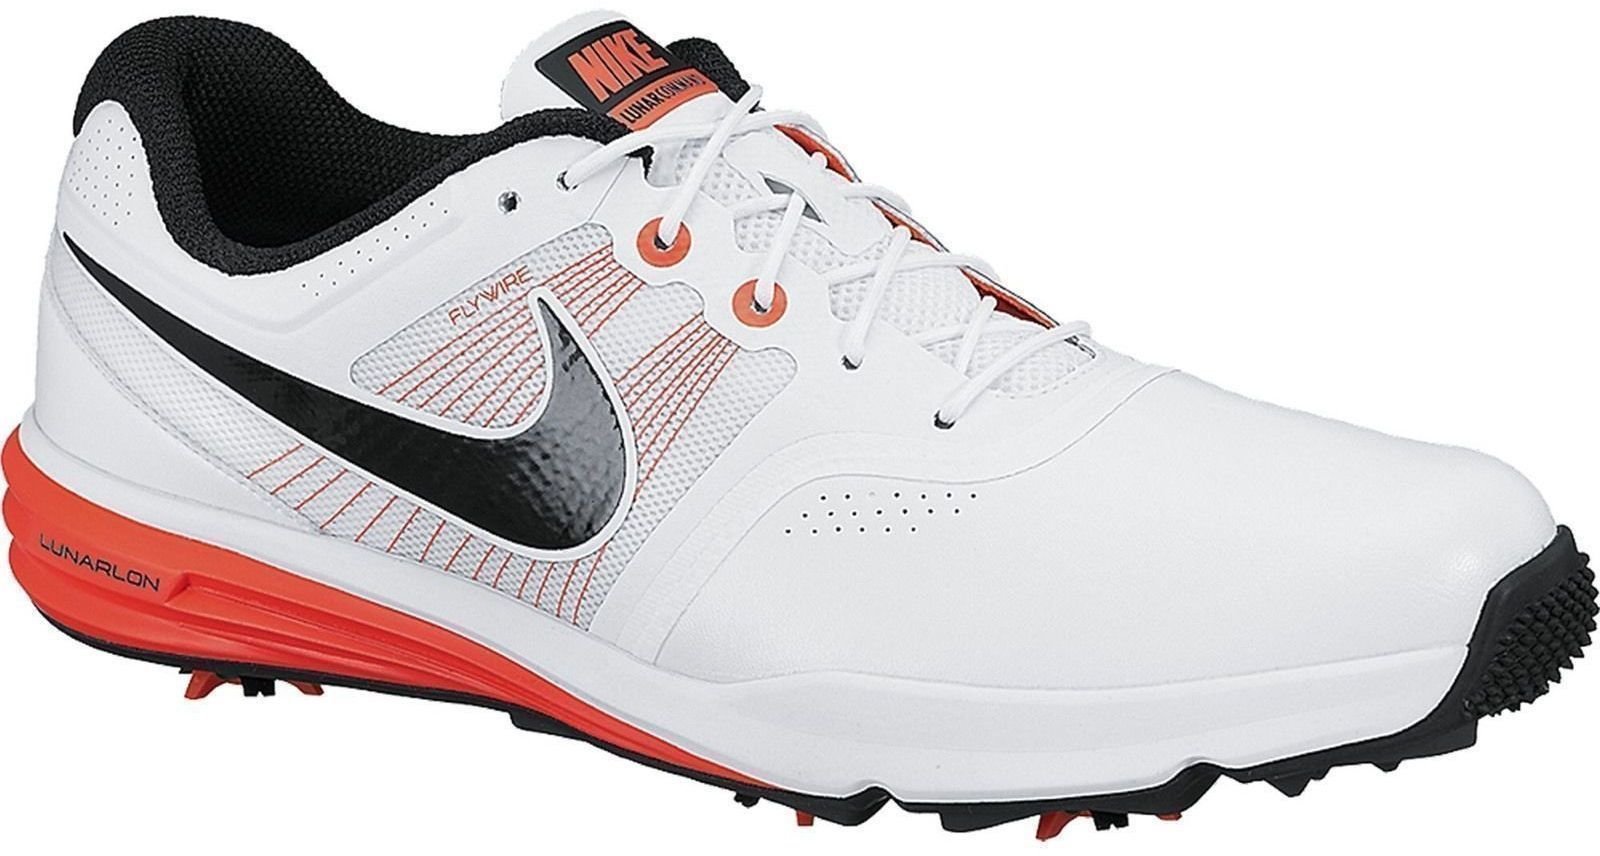 Calzado de golf para hombres Nike Lunar Command Mens Golf Shoes White/Black/Crimson US 11